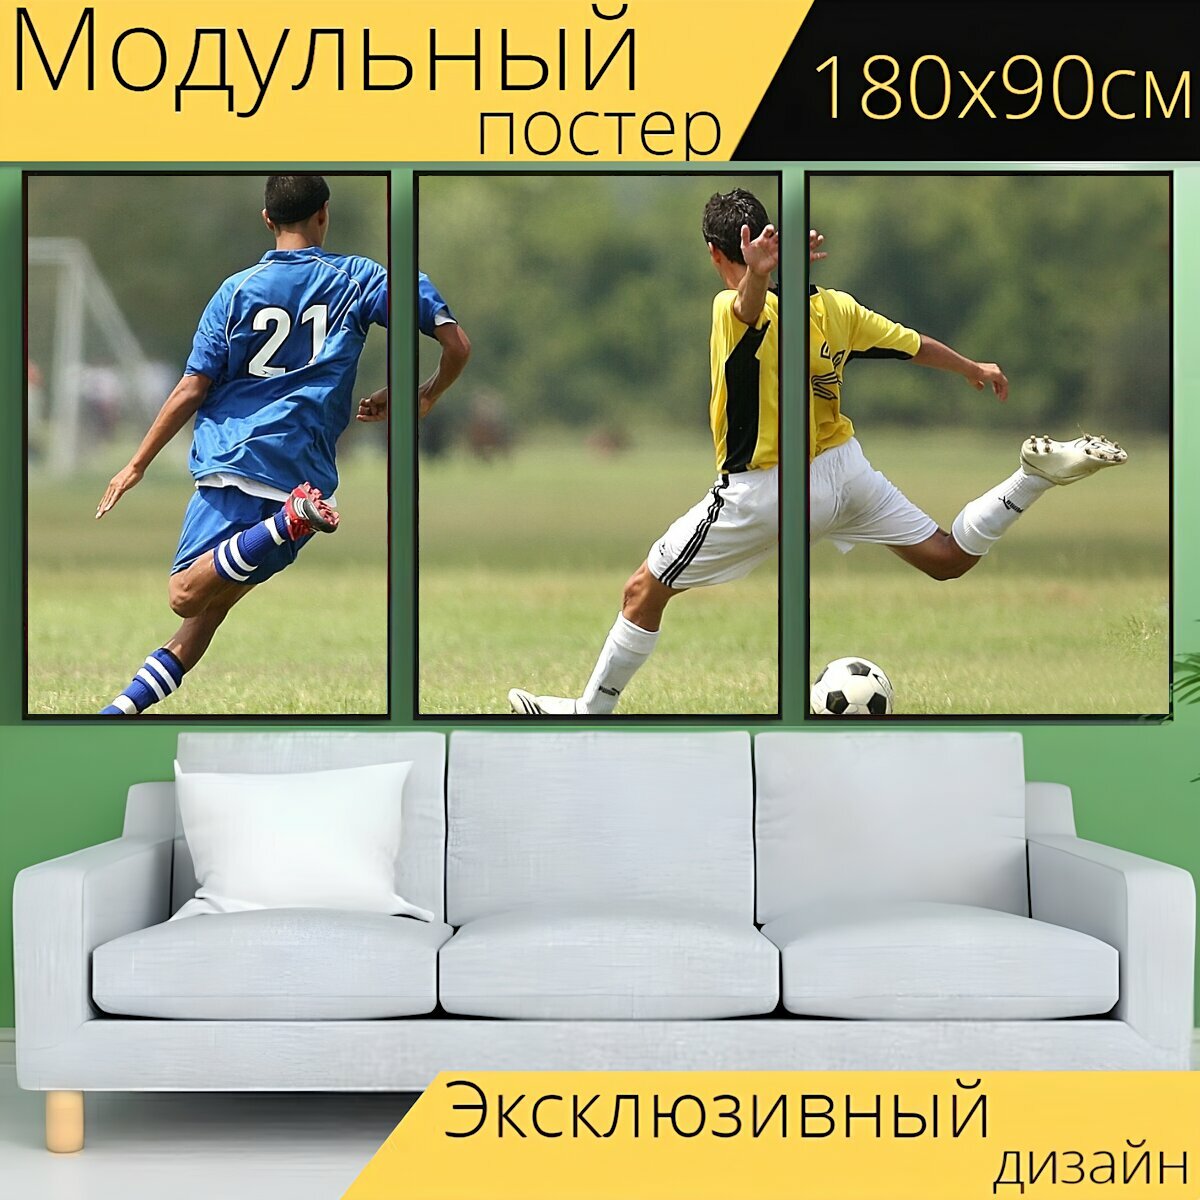 Модульный постер "Футбольный, футбол, игроки в футбол" 180 x 90 см. для интерьера